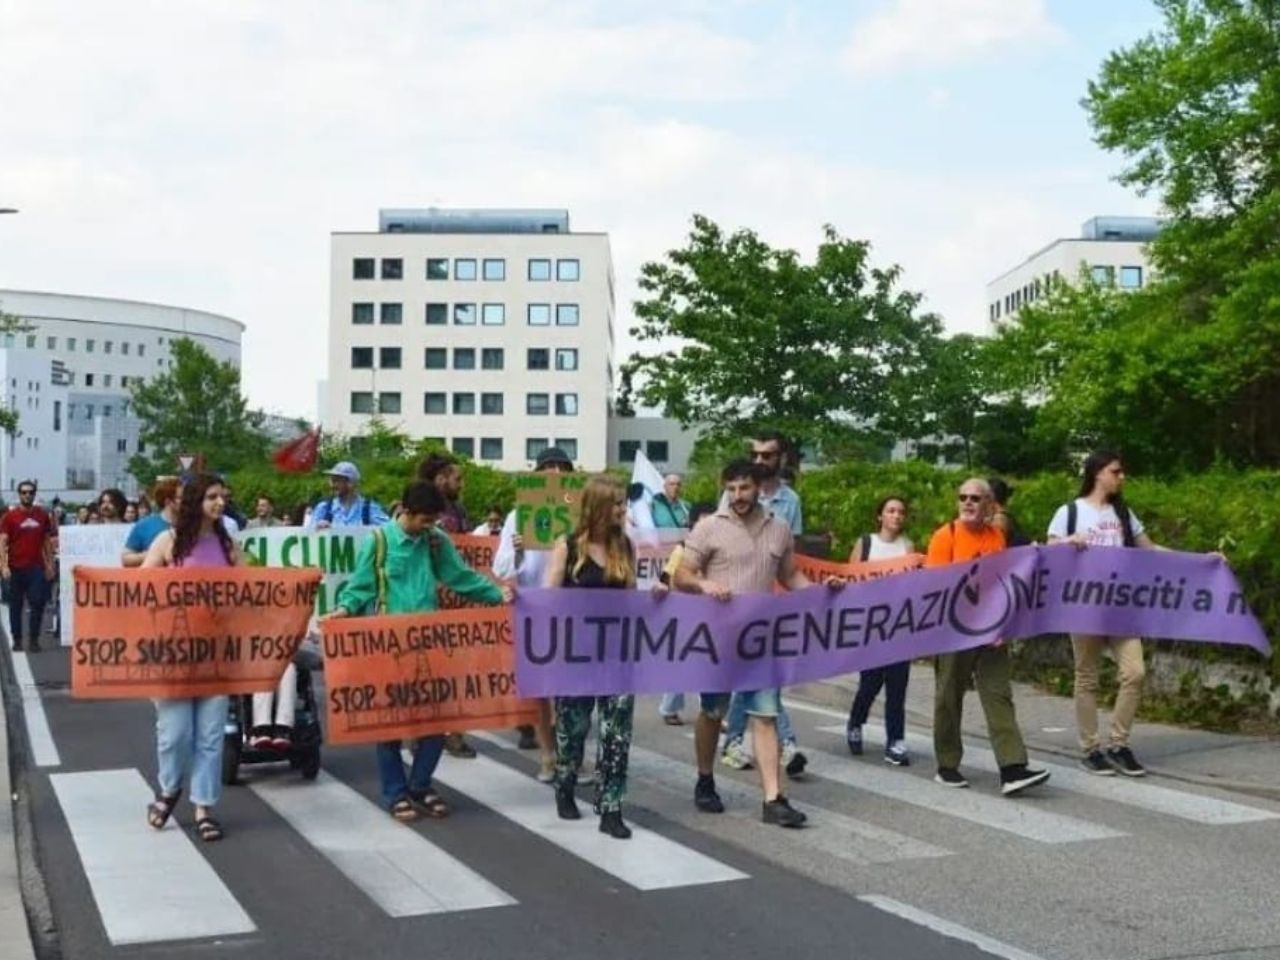 “Disobbedienza civile non violenta”: gli attivisti di Ultima Generazione ad Osimo